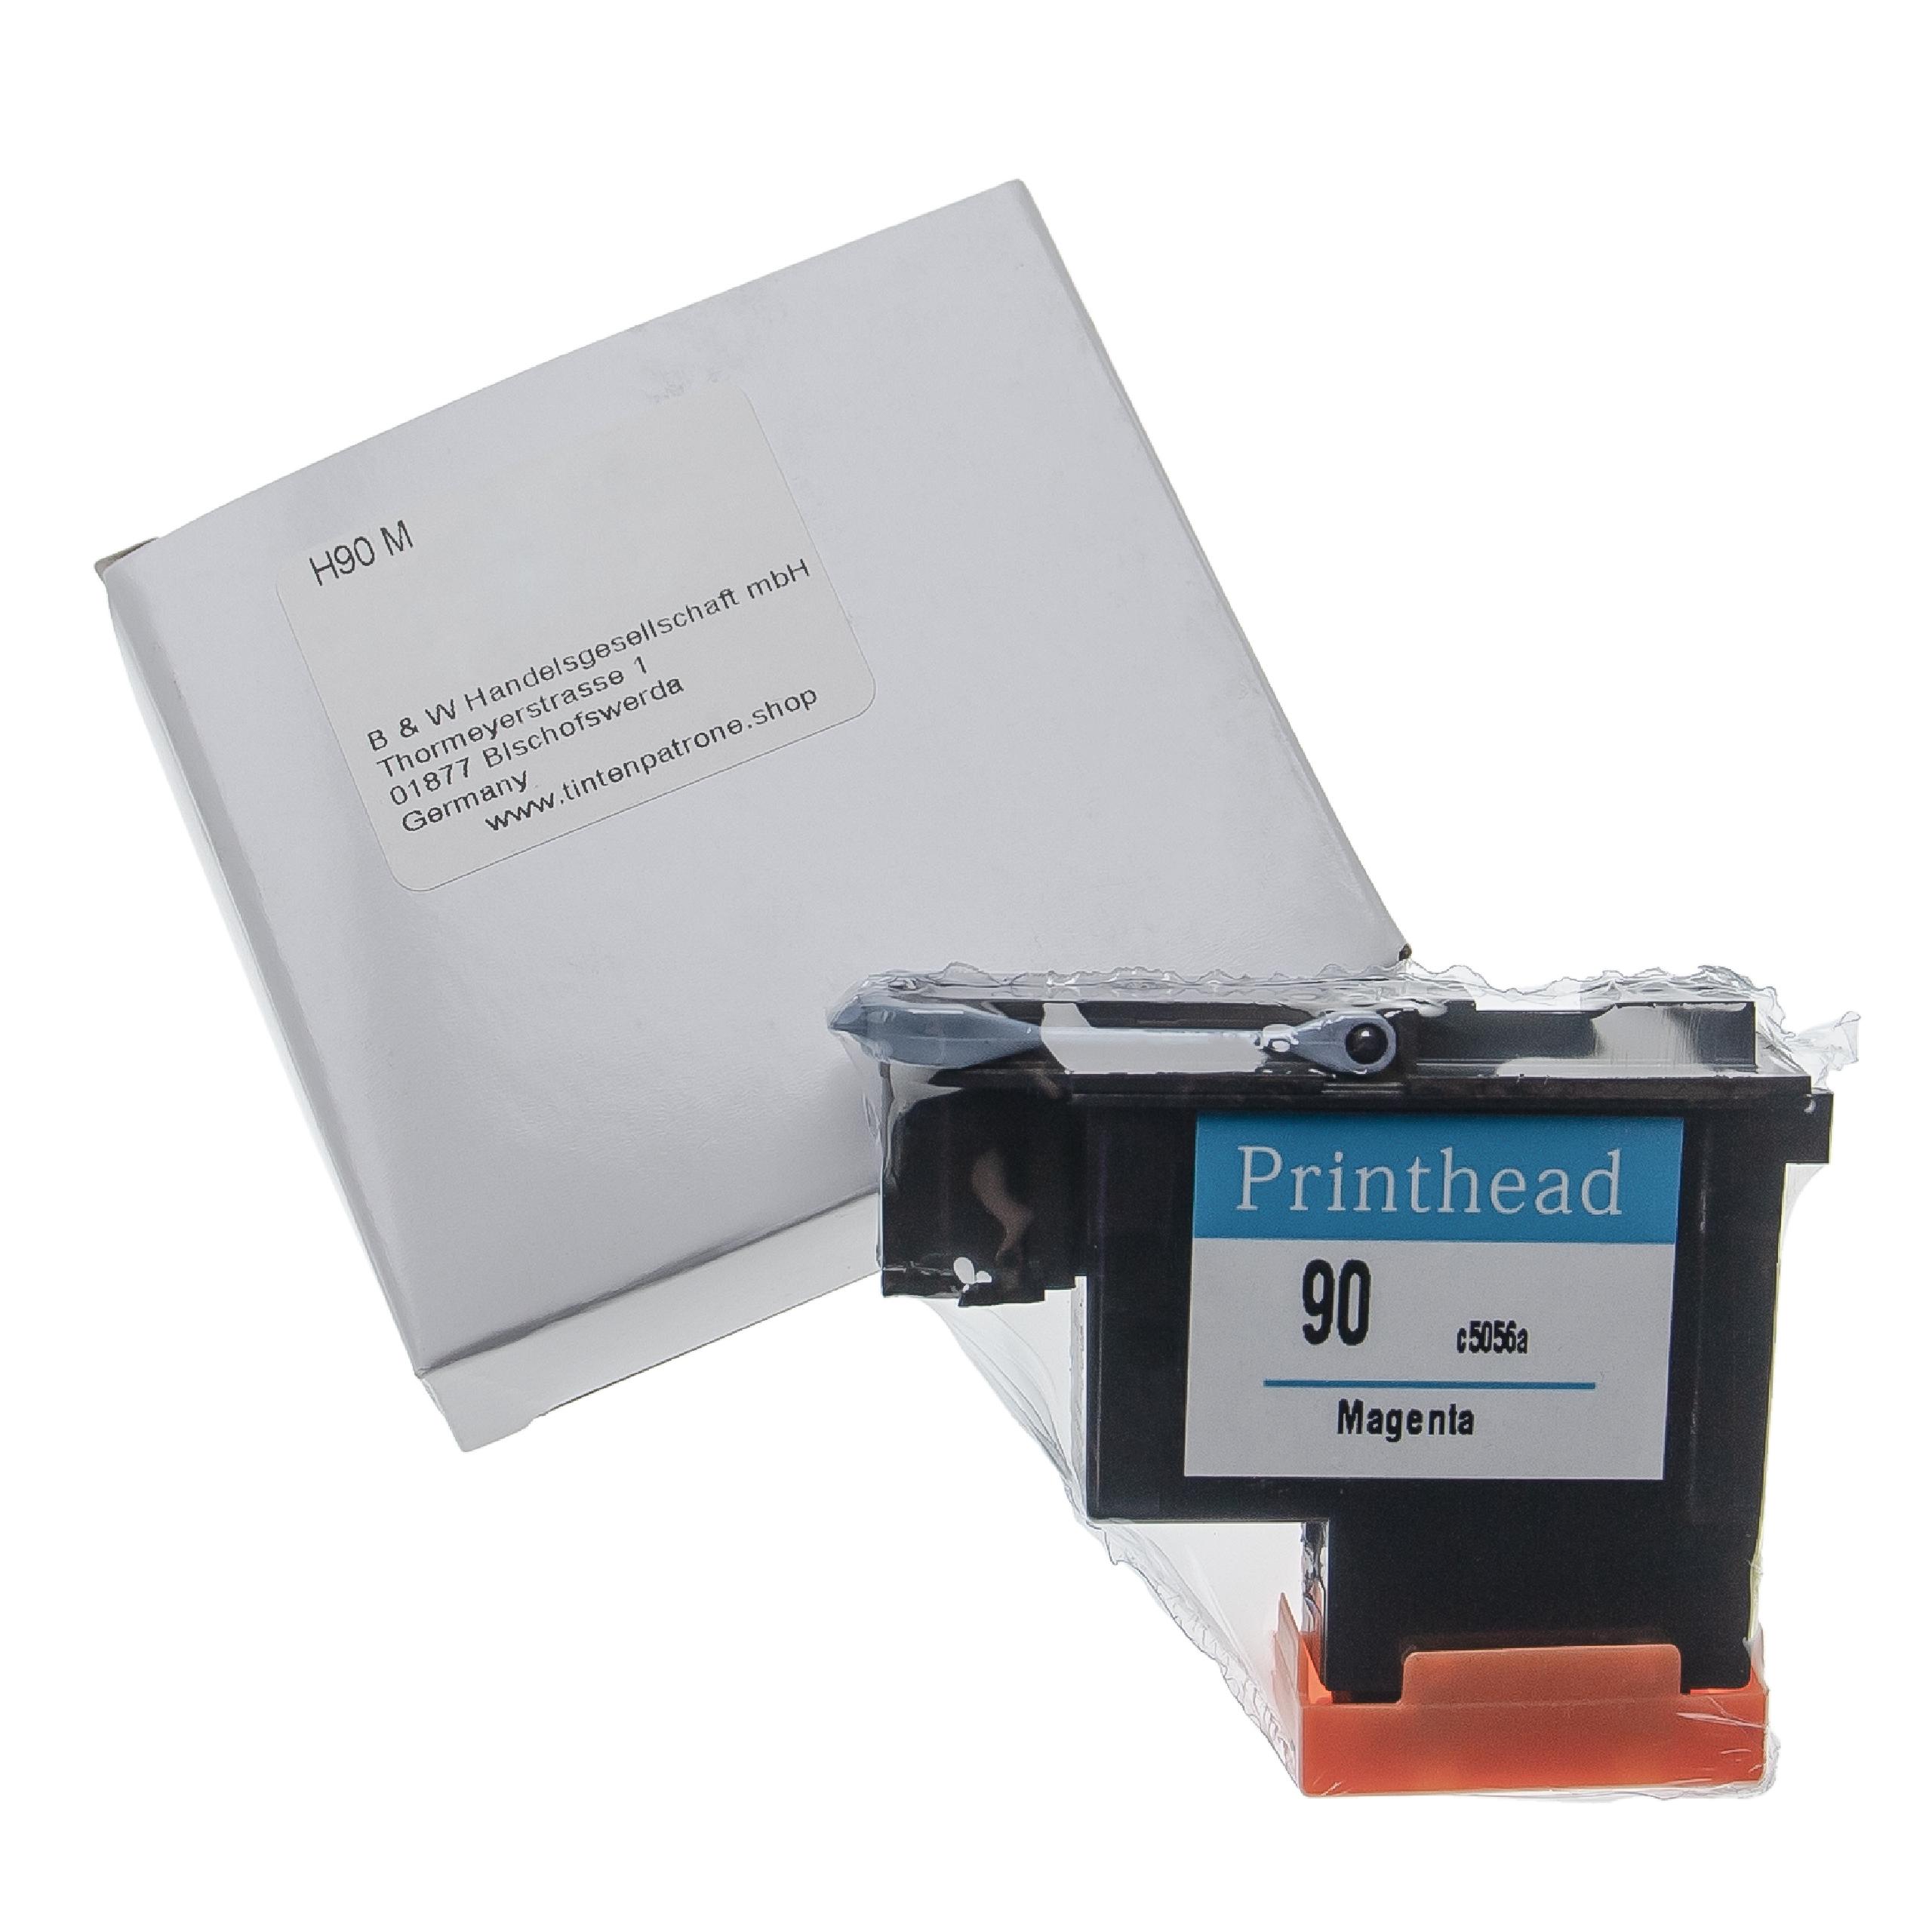 Druckkopf für HP DesignJet HP C5056A Drucker - magenta, 6 cm breit, Refurbished, Mit Reiniger